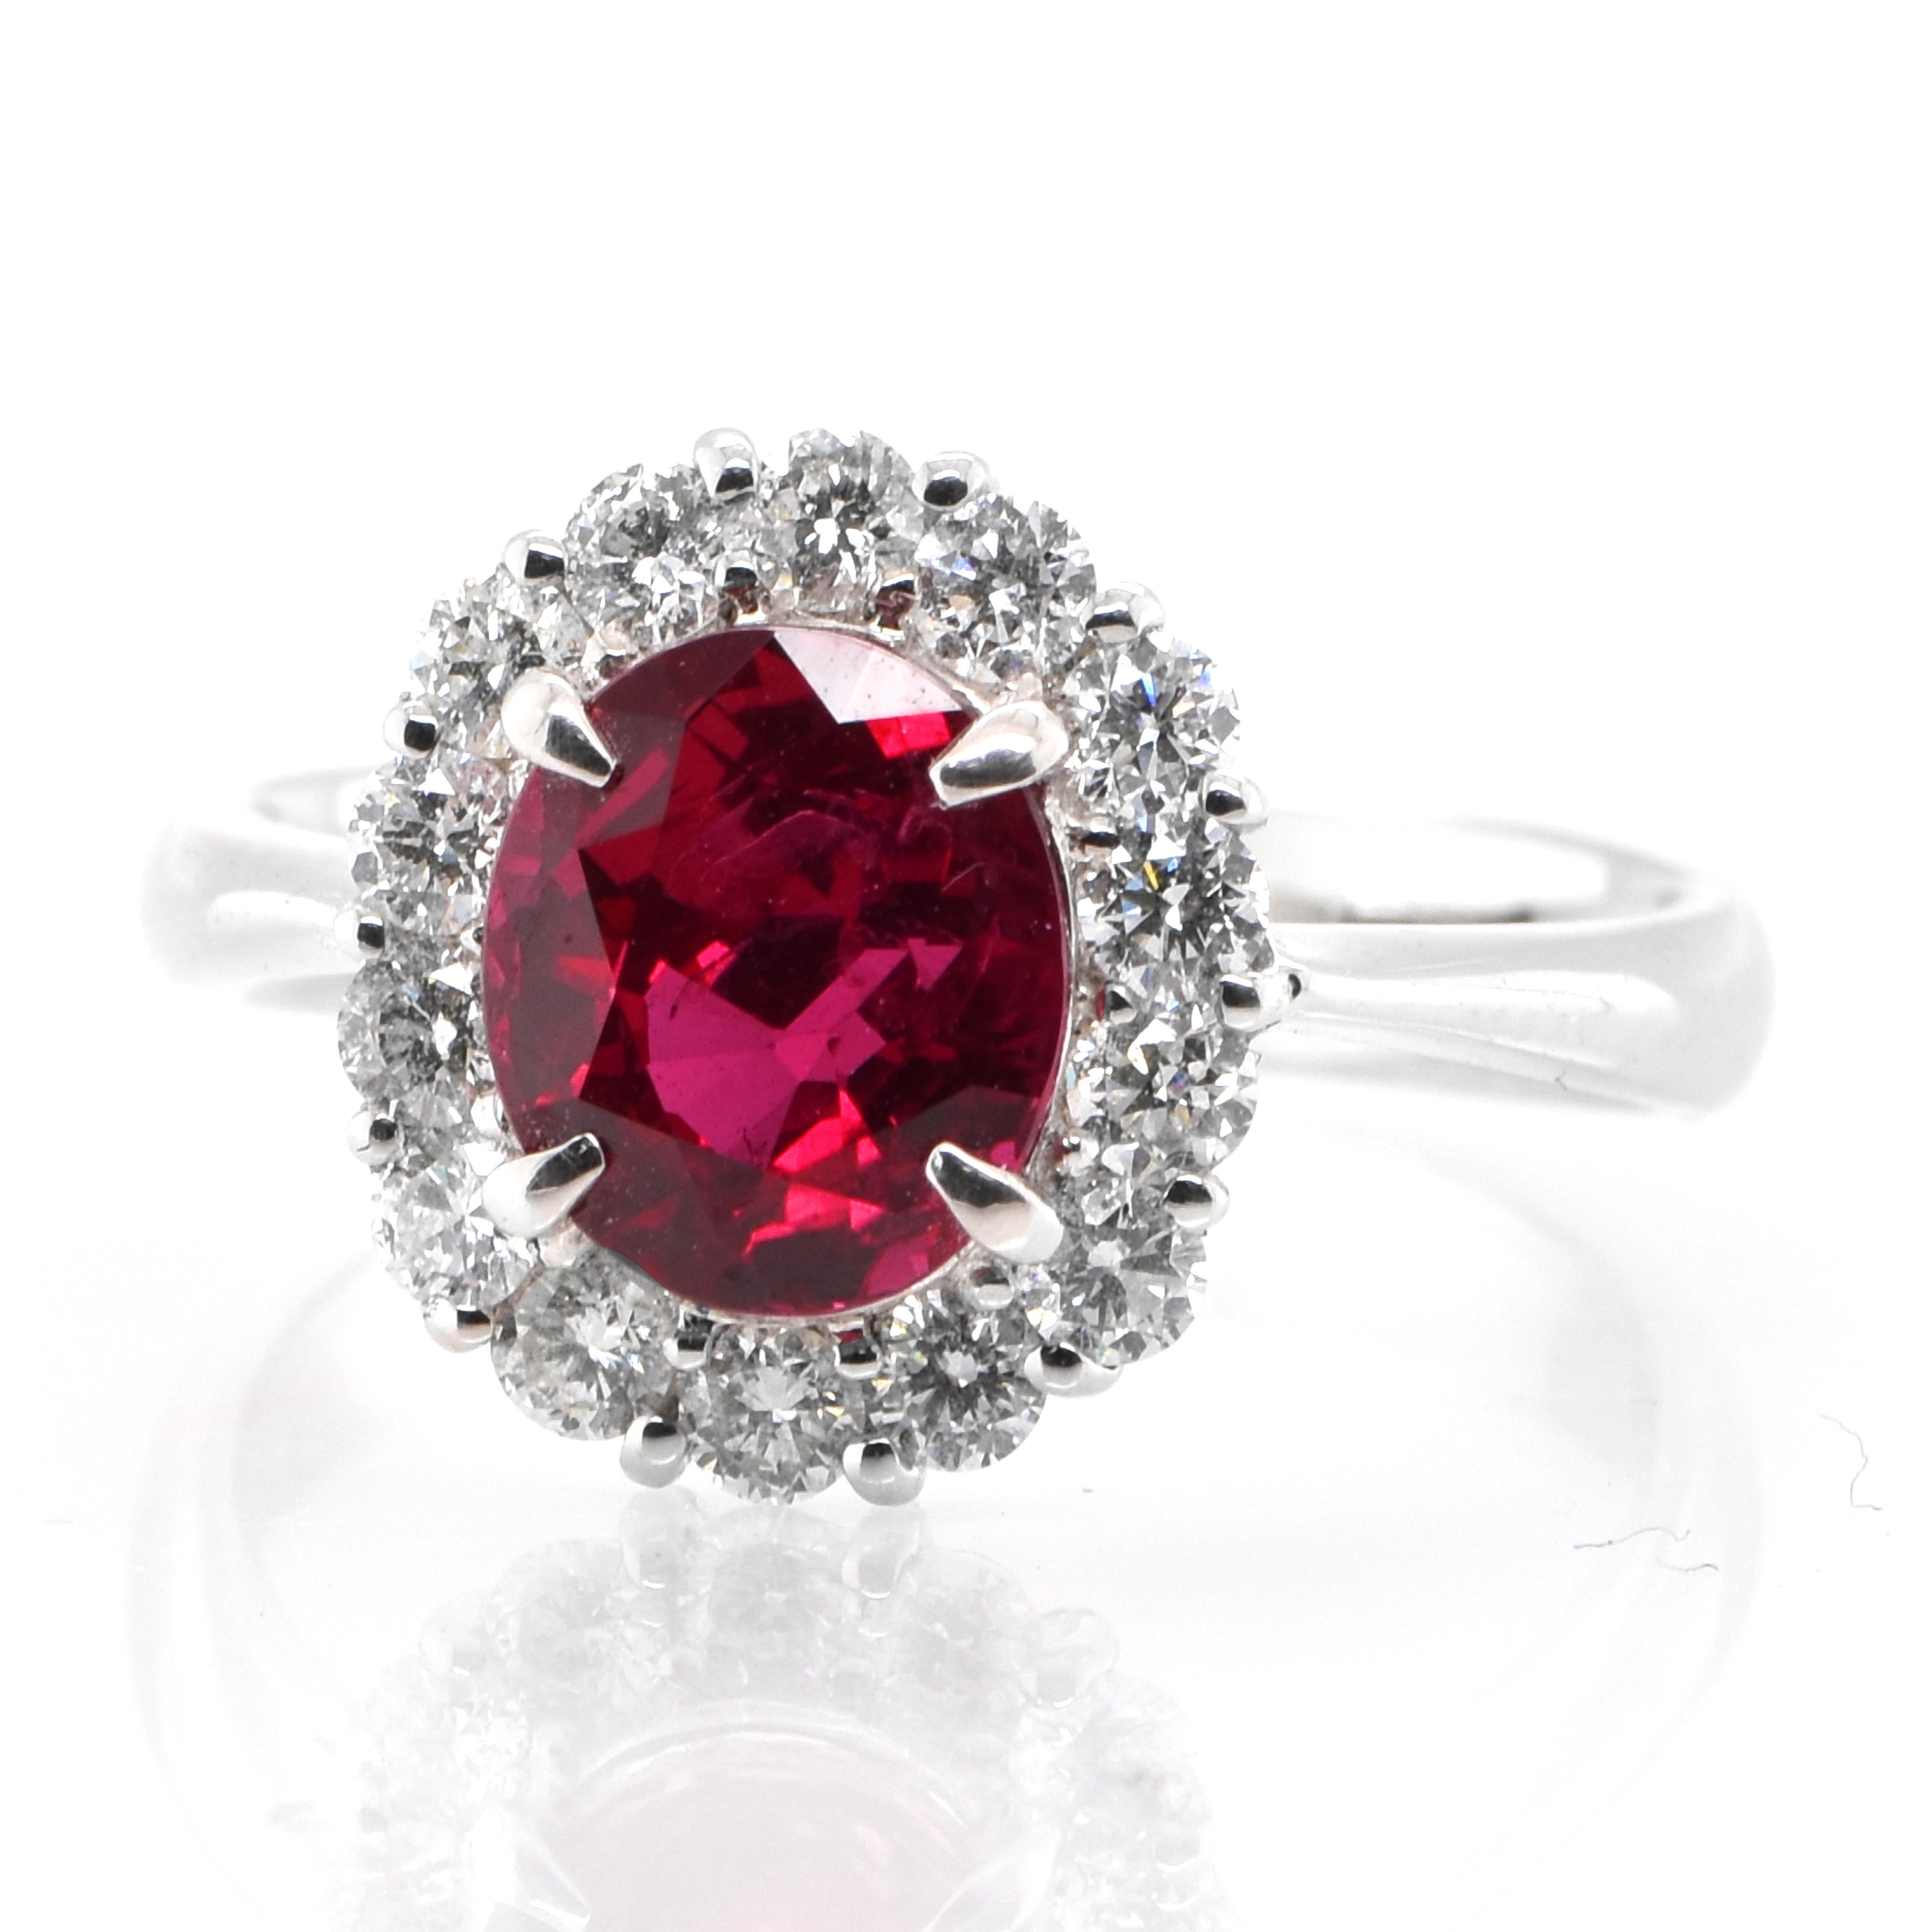 Une magnifique bague en platine ornée d'un rubis de Thaïlande rouge vif de 2,33 carats certifié GRS et de diamants de 0,61 carat. Les rubis sont appelés 